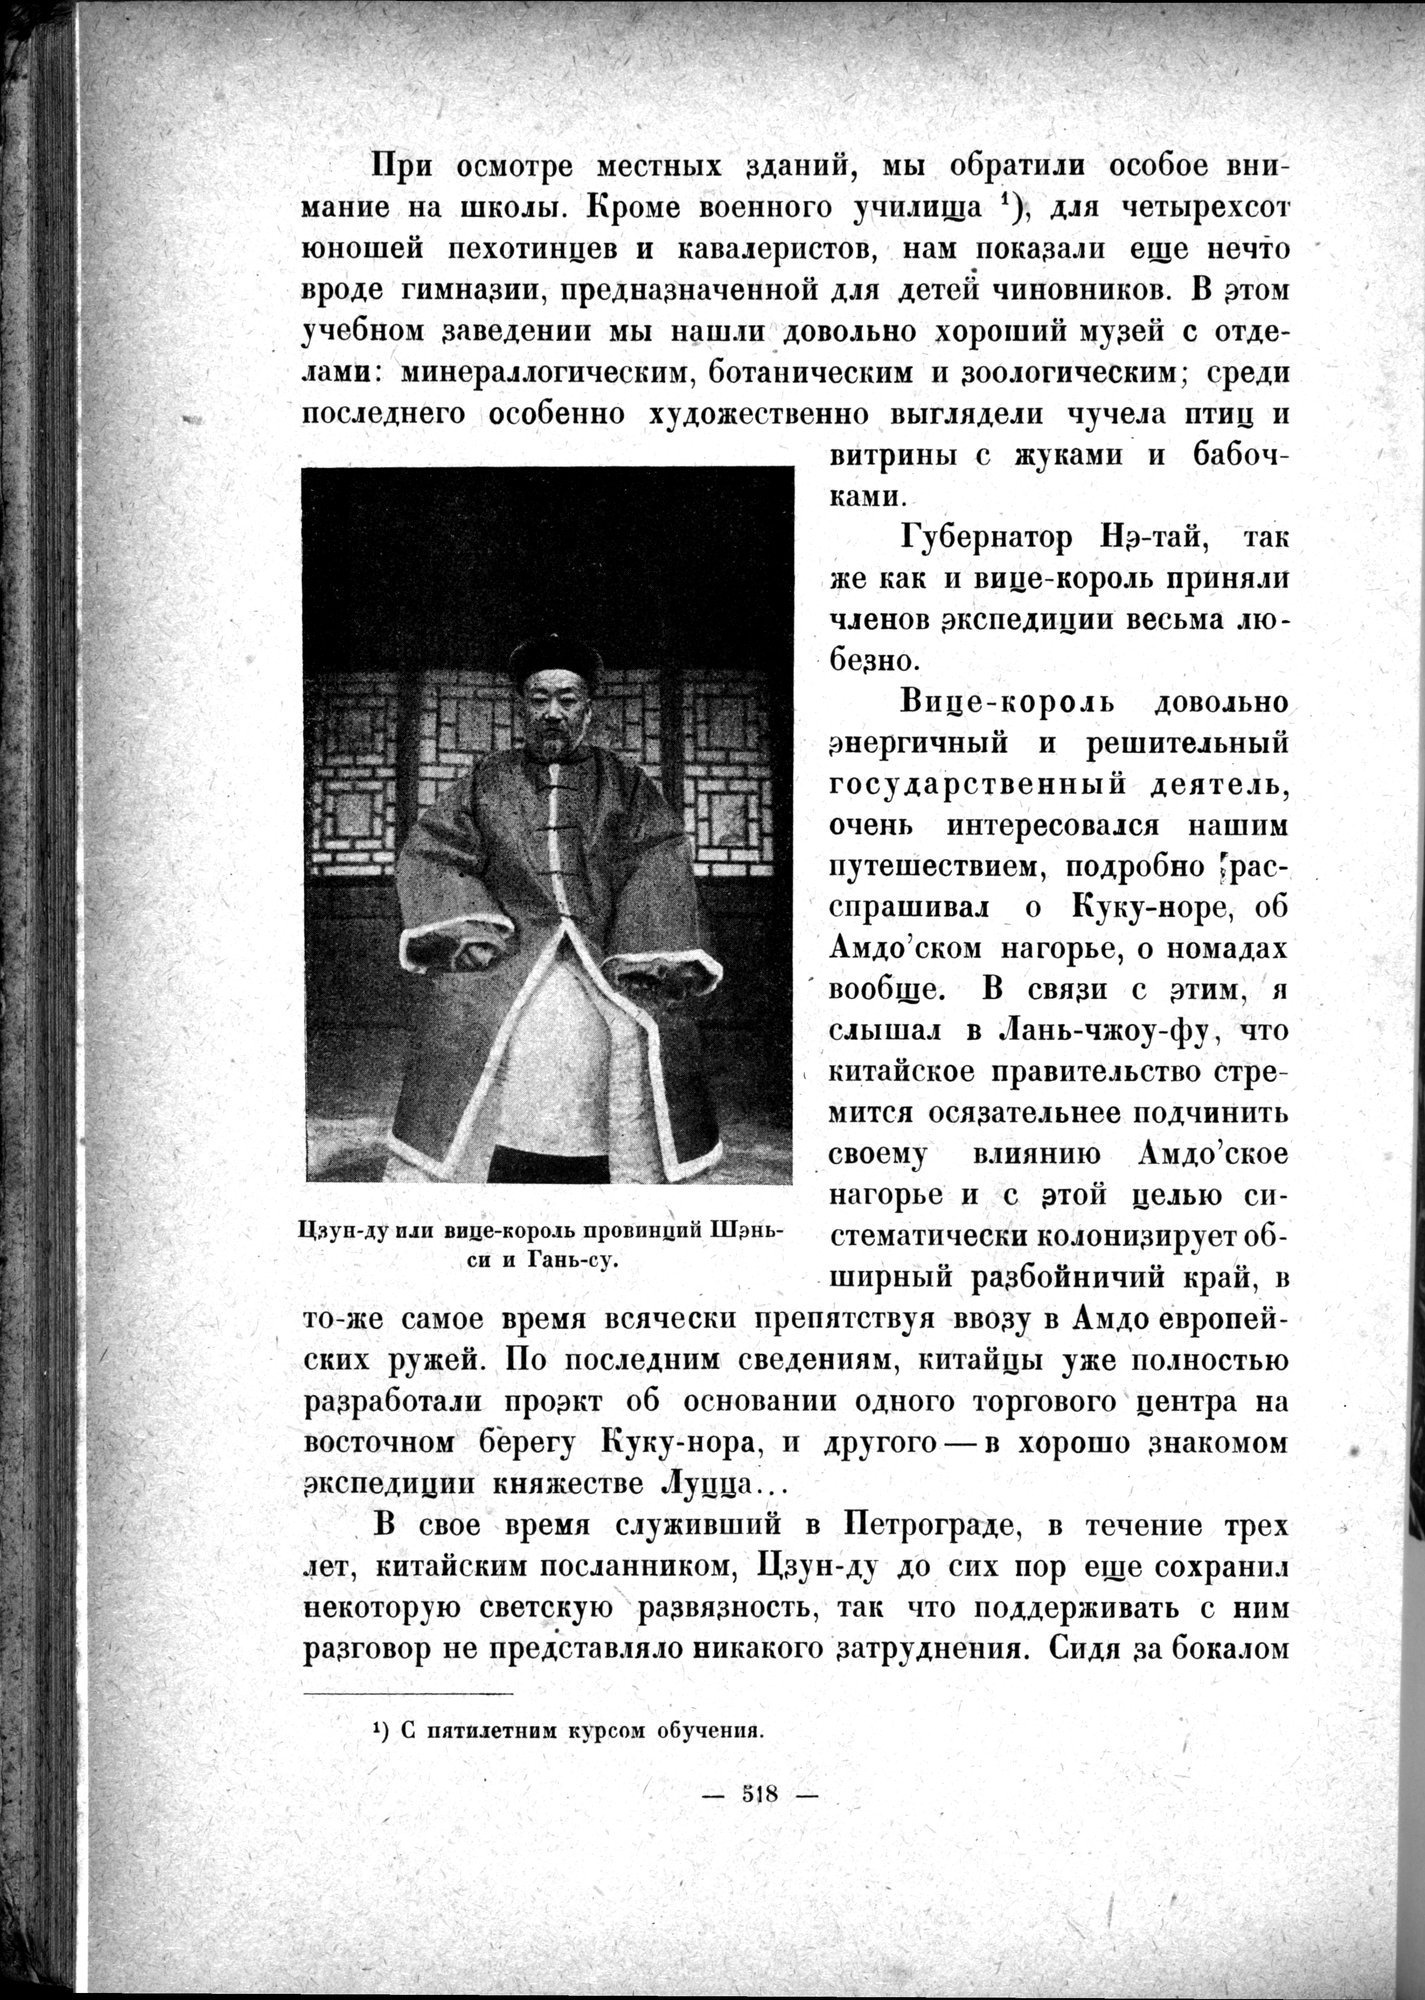 Mongoliya i Amdo i mertby gorod Khara-Khoto : vol.1 / 598 ページ（白黒高解像度画像）